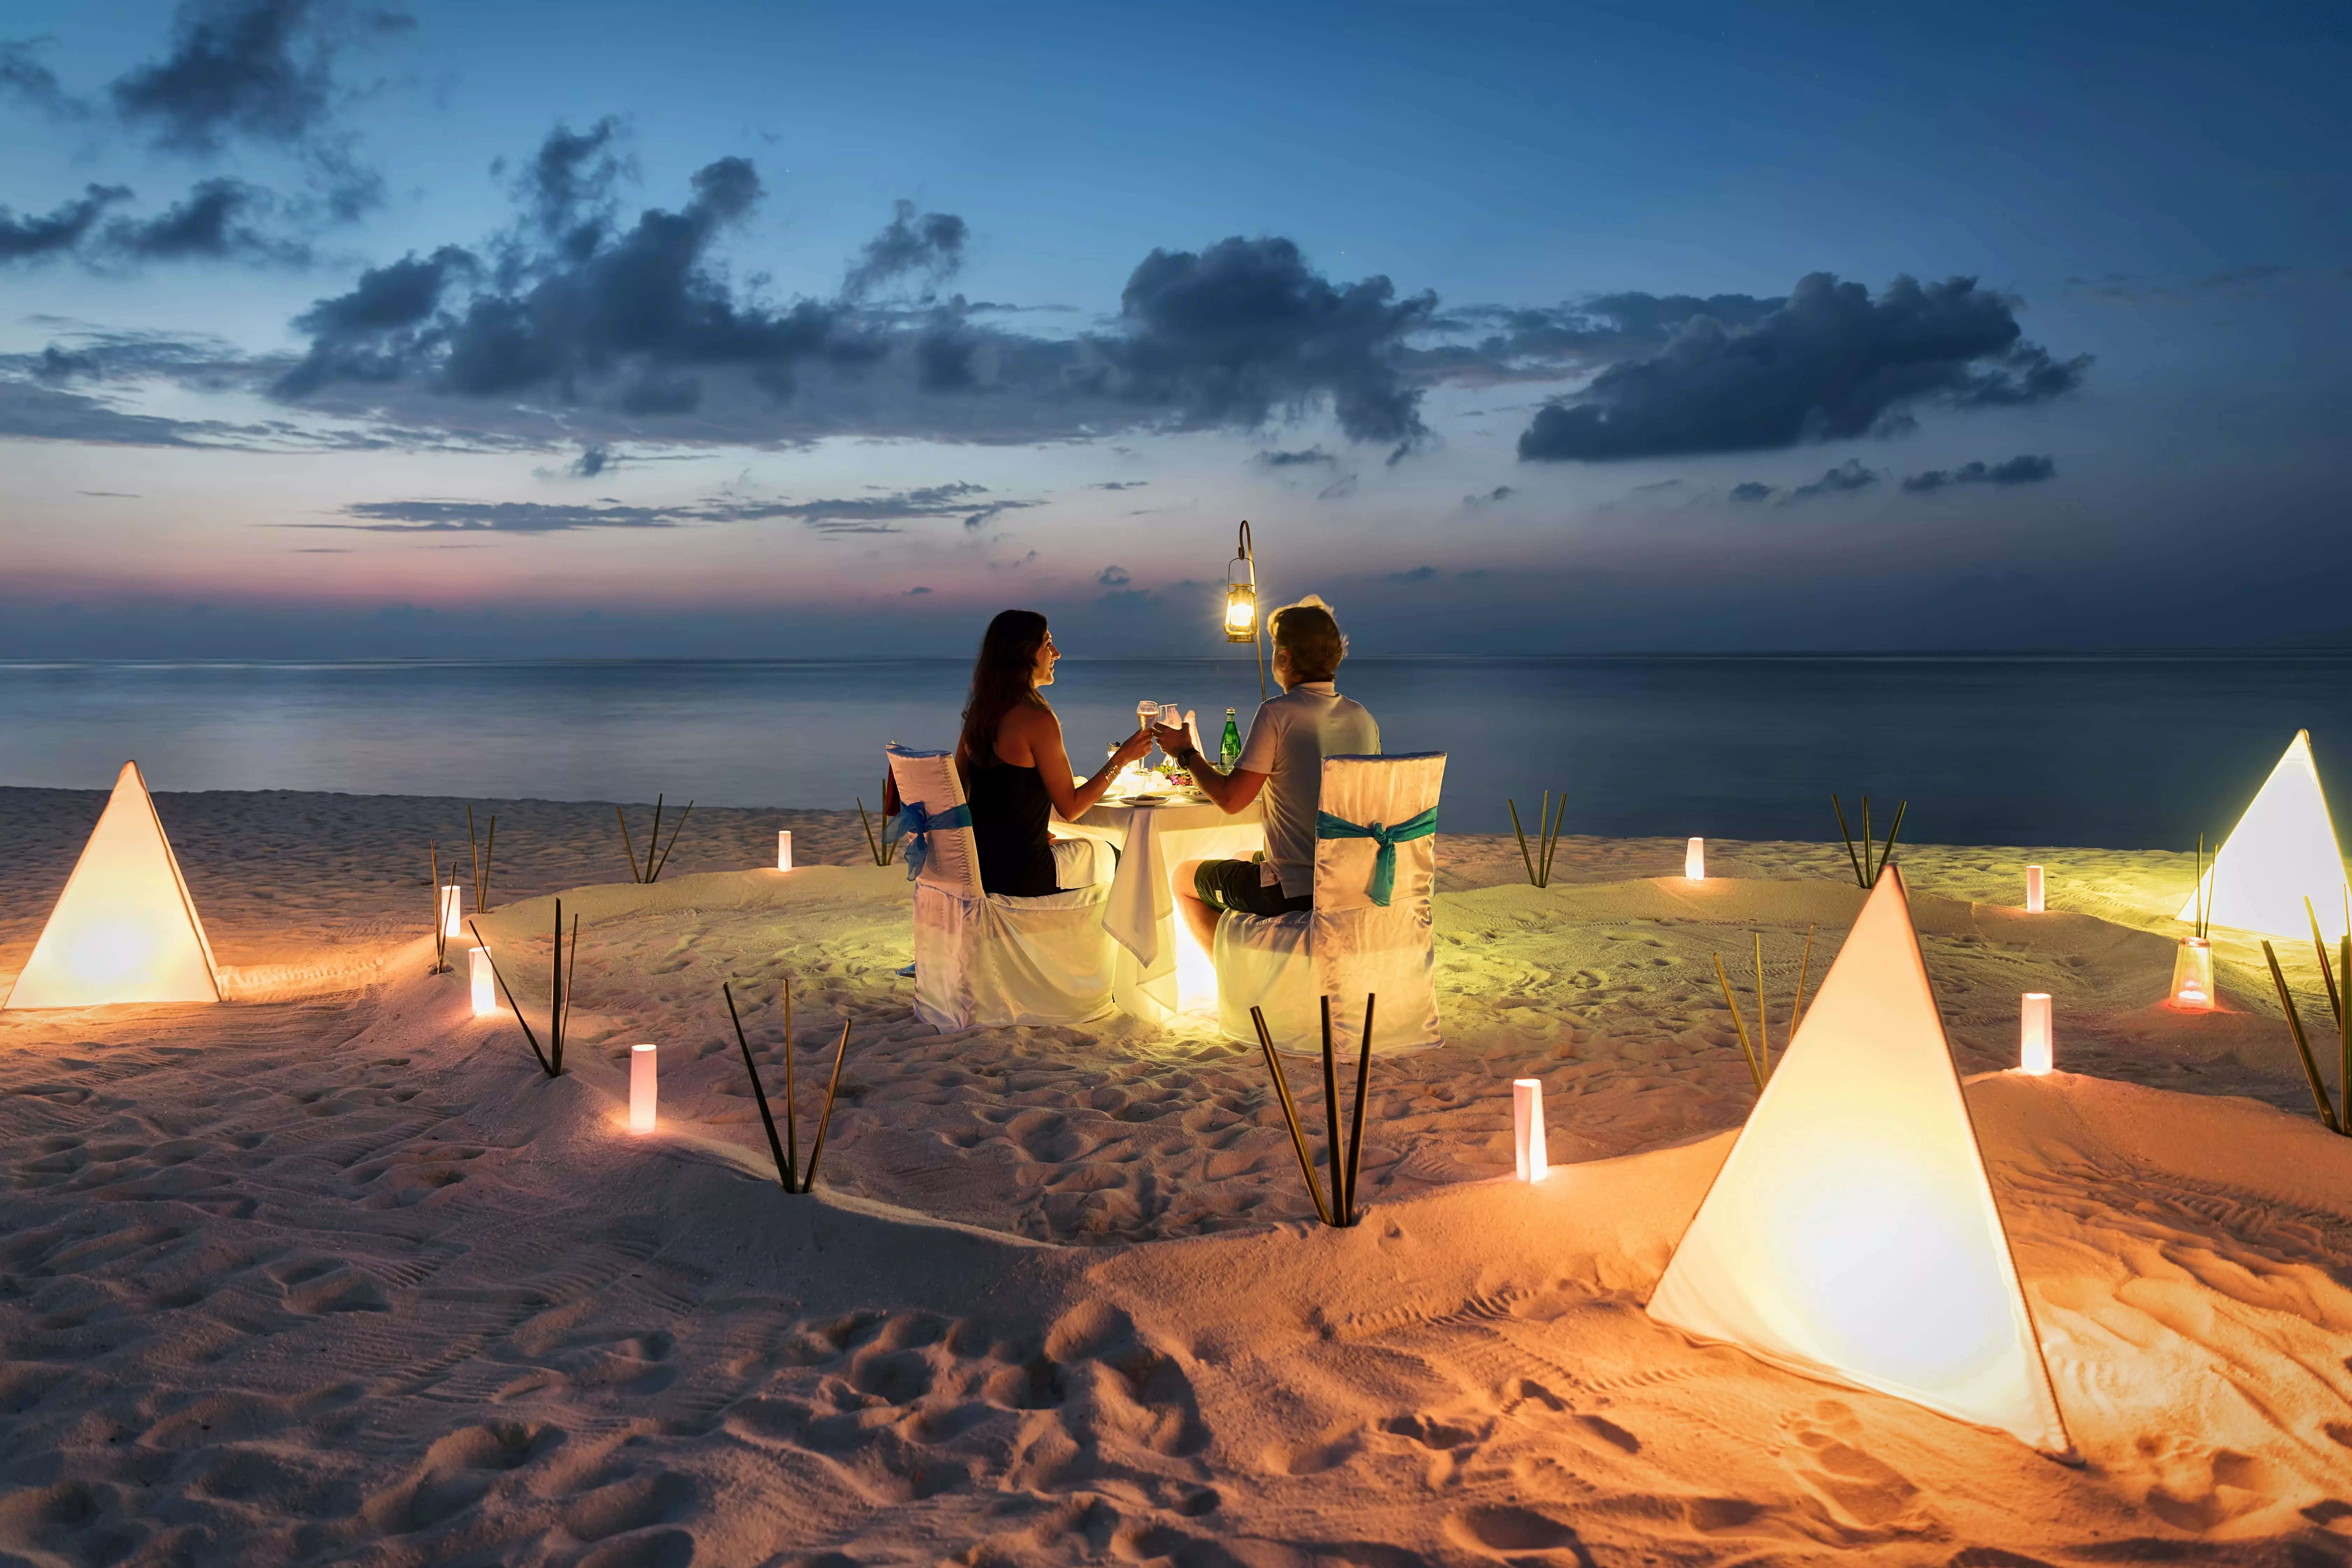 Booking.com shares a honeymoon destination guide for couples, ET